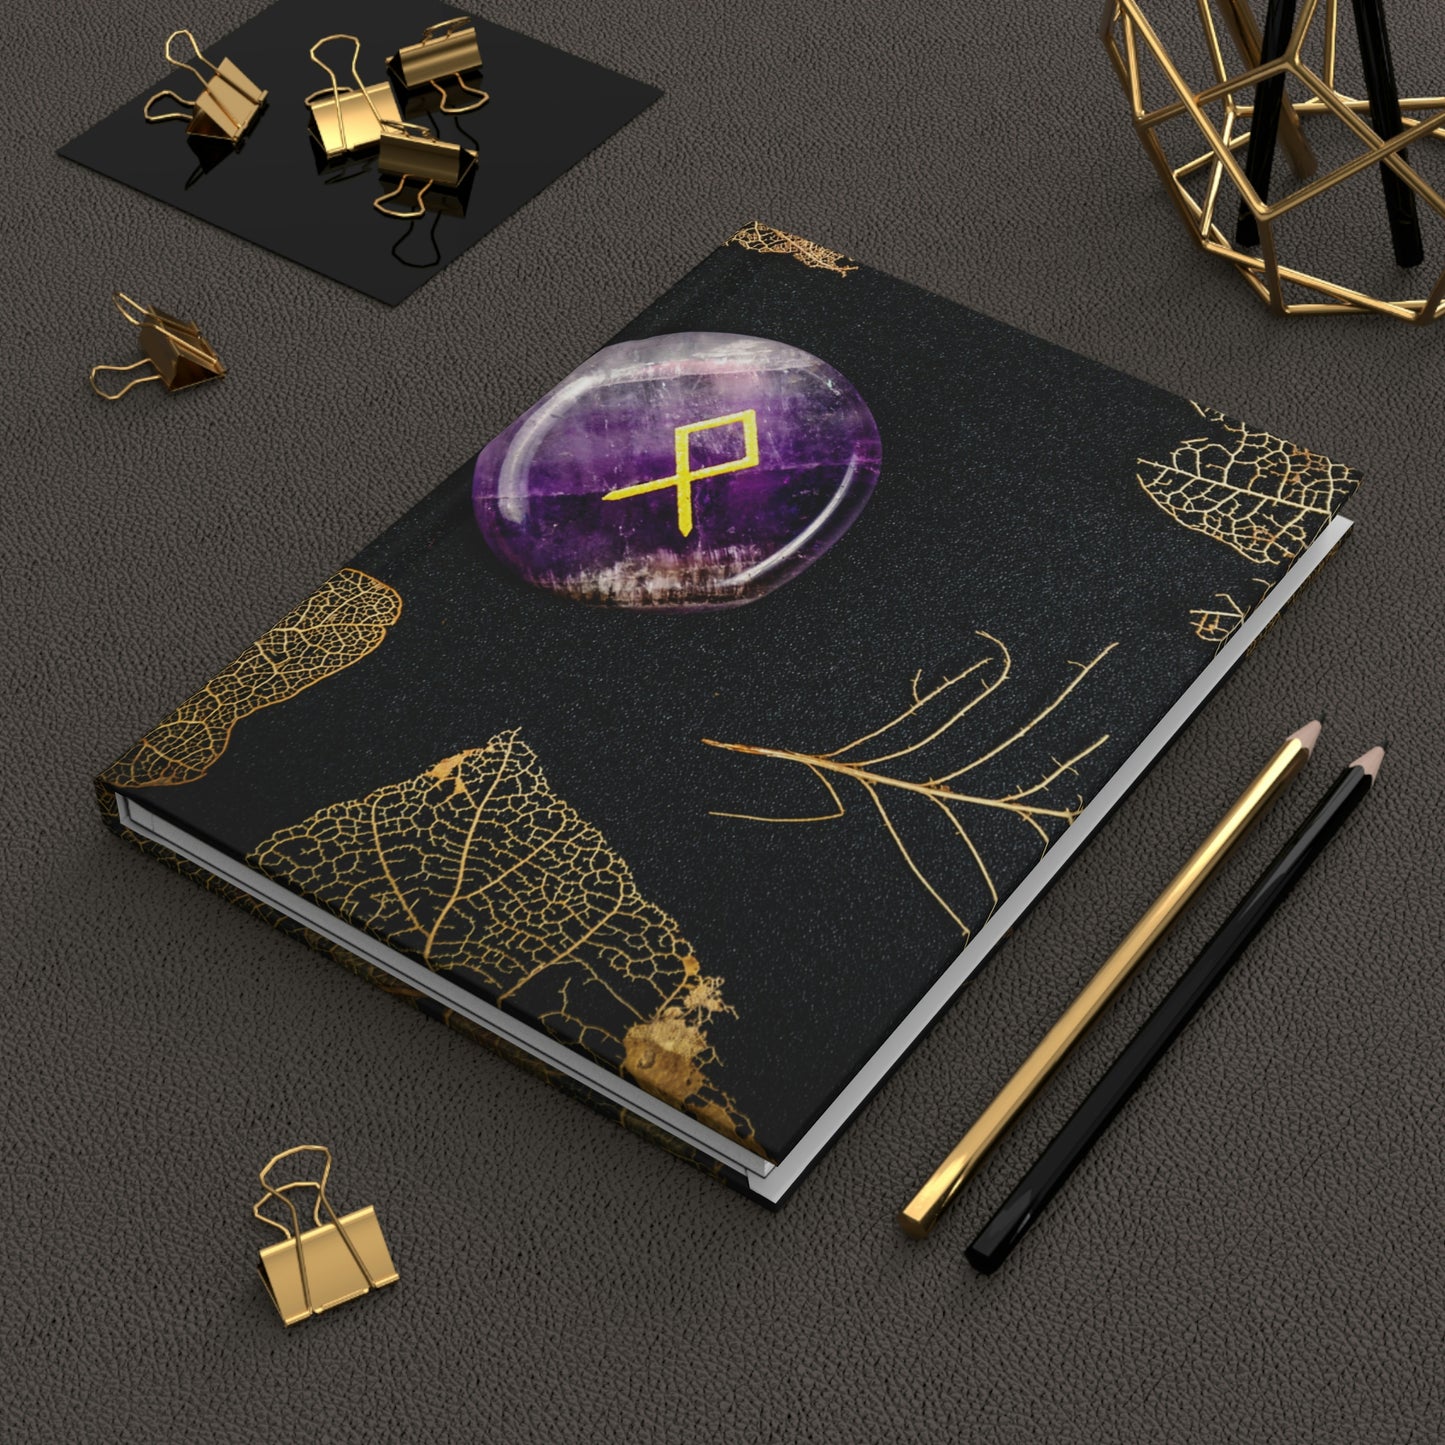 Rune Notebook Book Hardcover Journal Matte